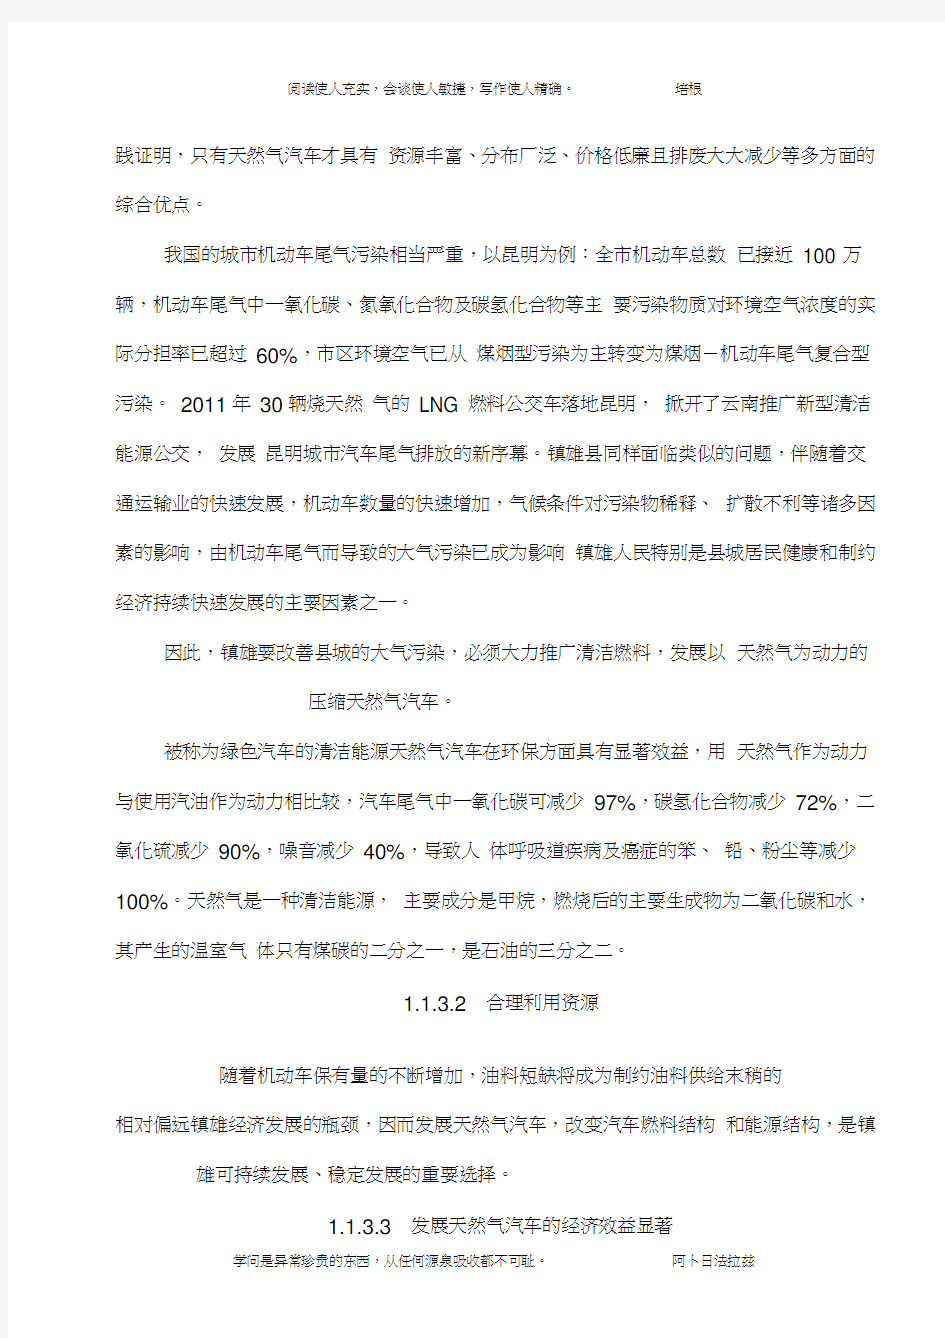 威信县庆平燃气有限公司镇雄CNG移动加气站-----------可行性研究报告